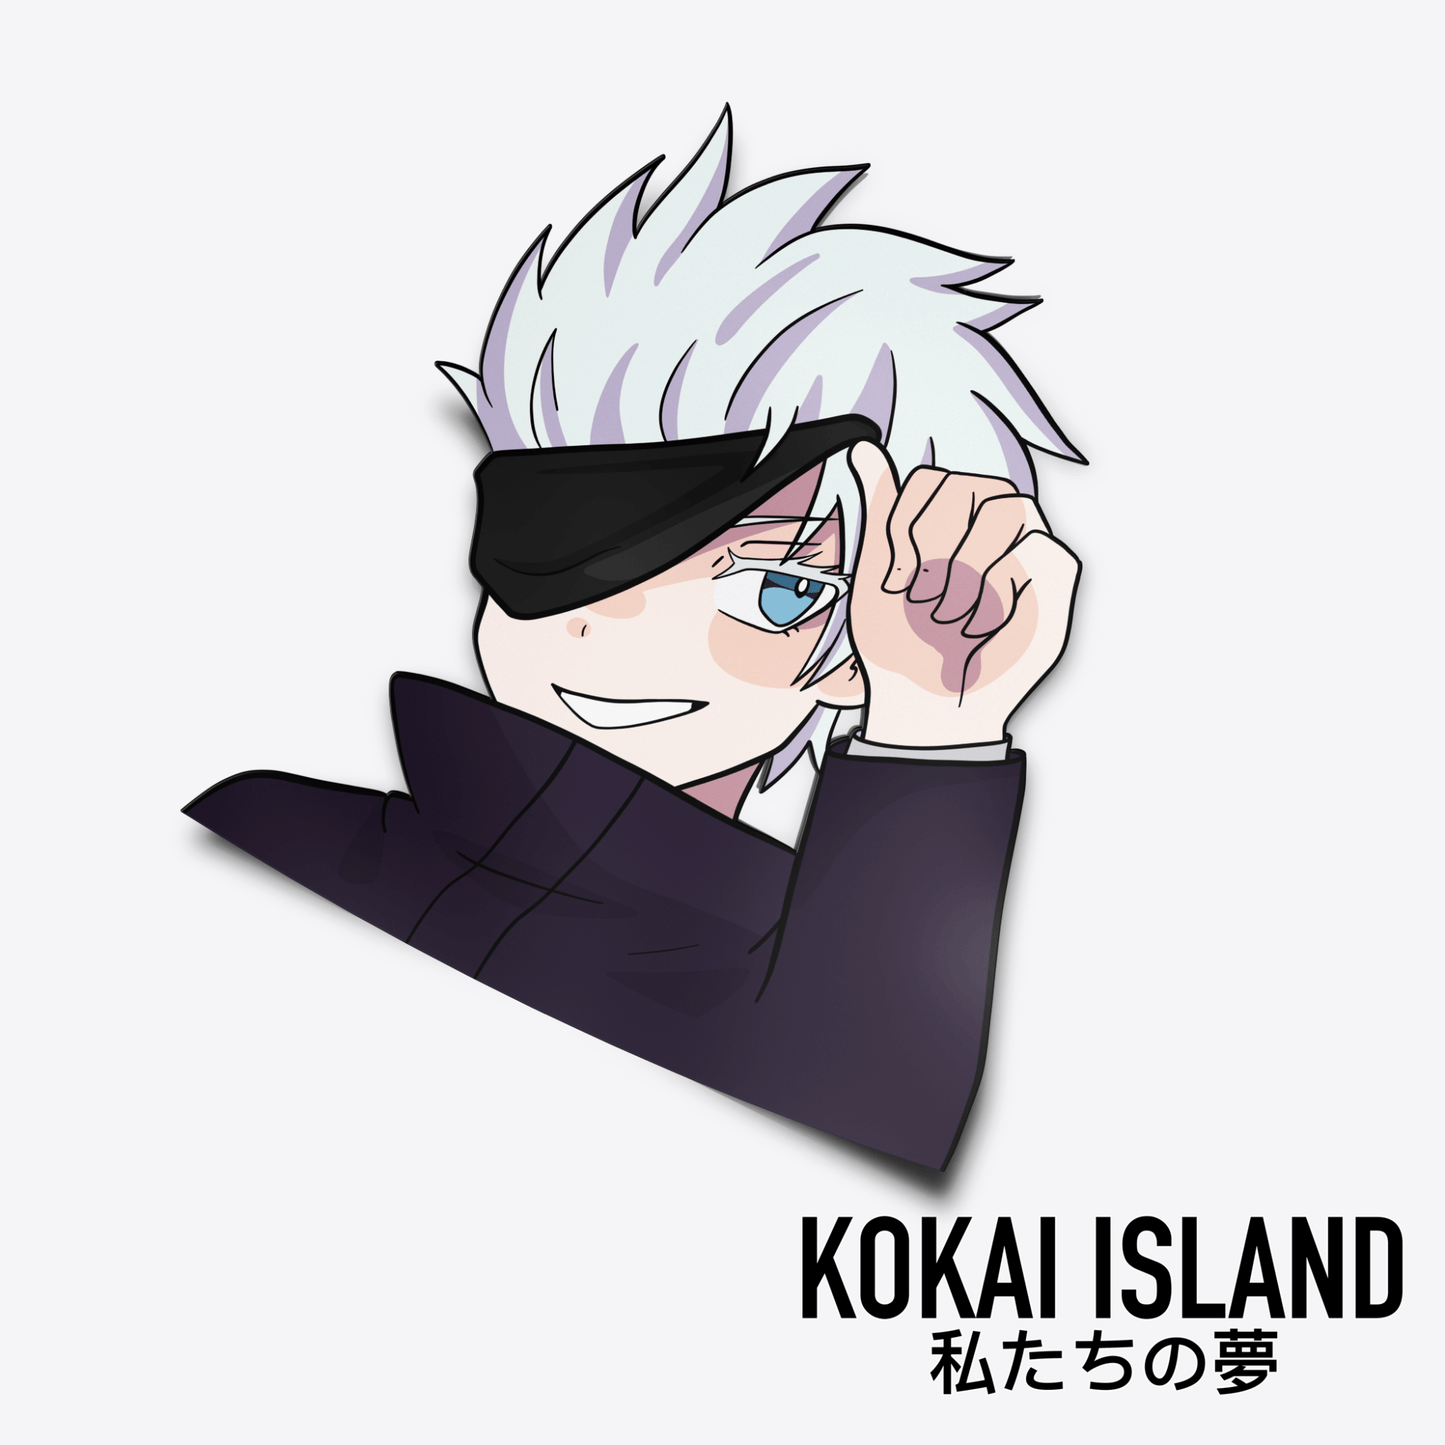 Blue Eyed Sorcerer DecalDecalKokai Island